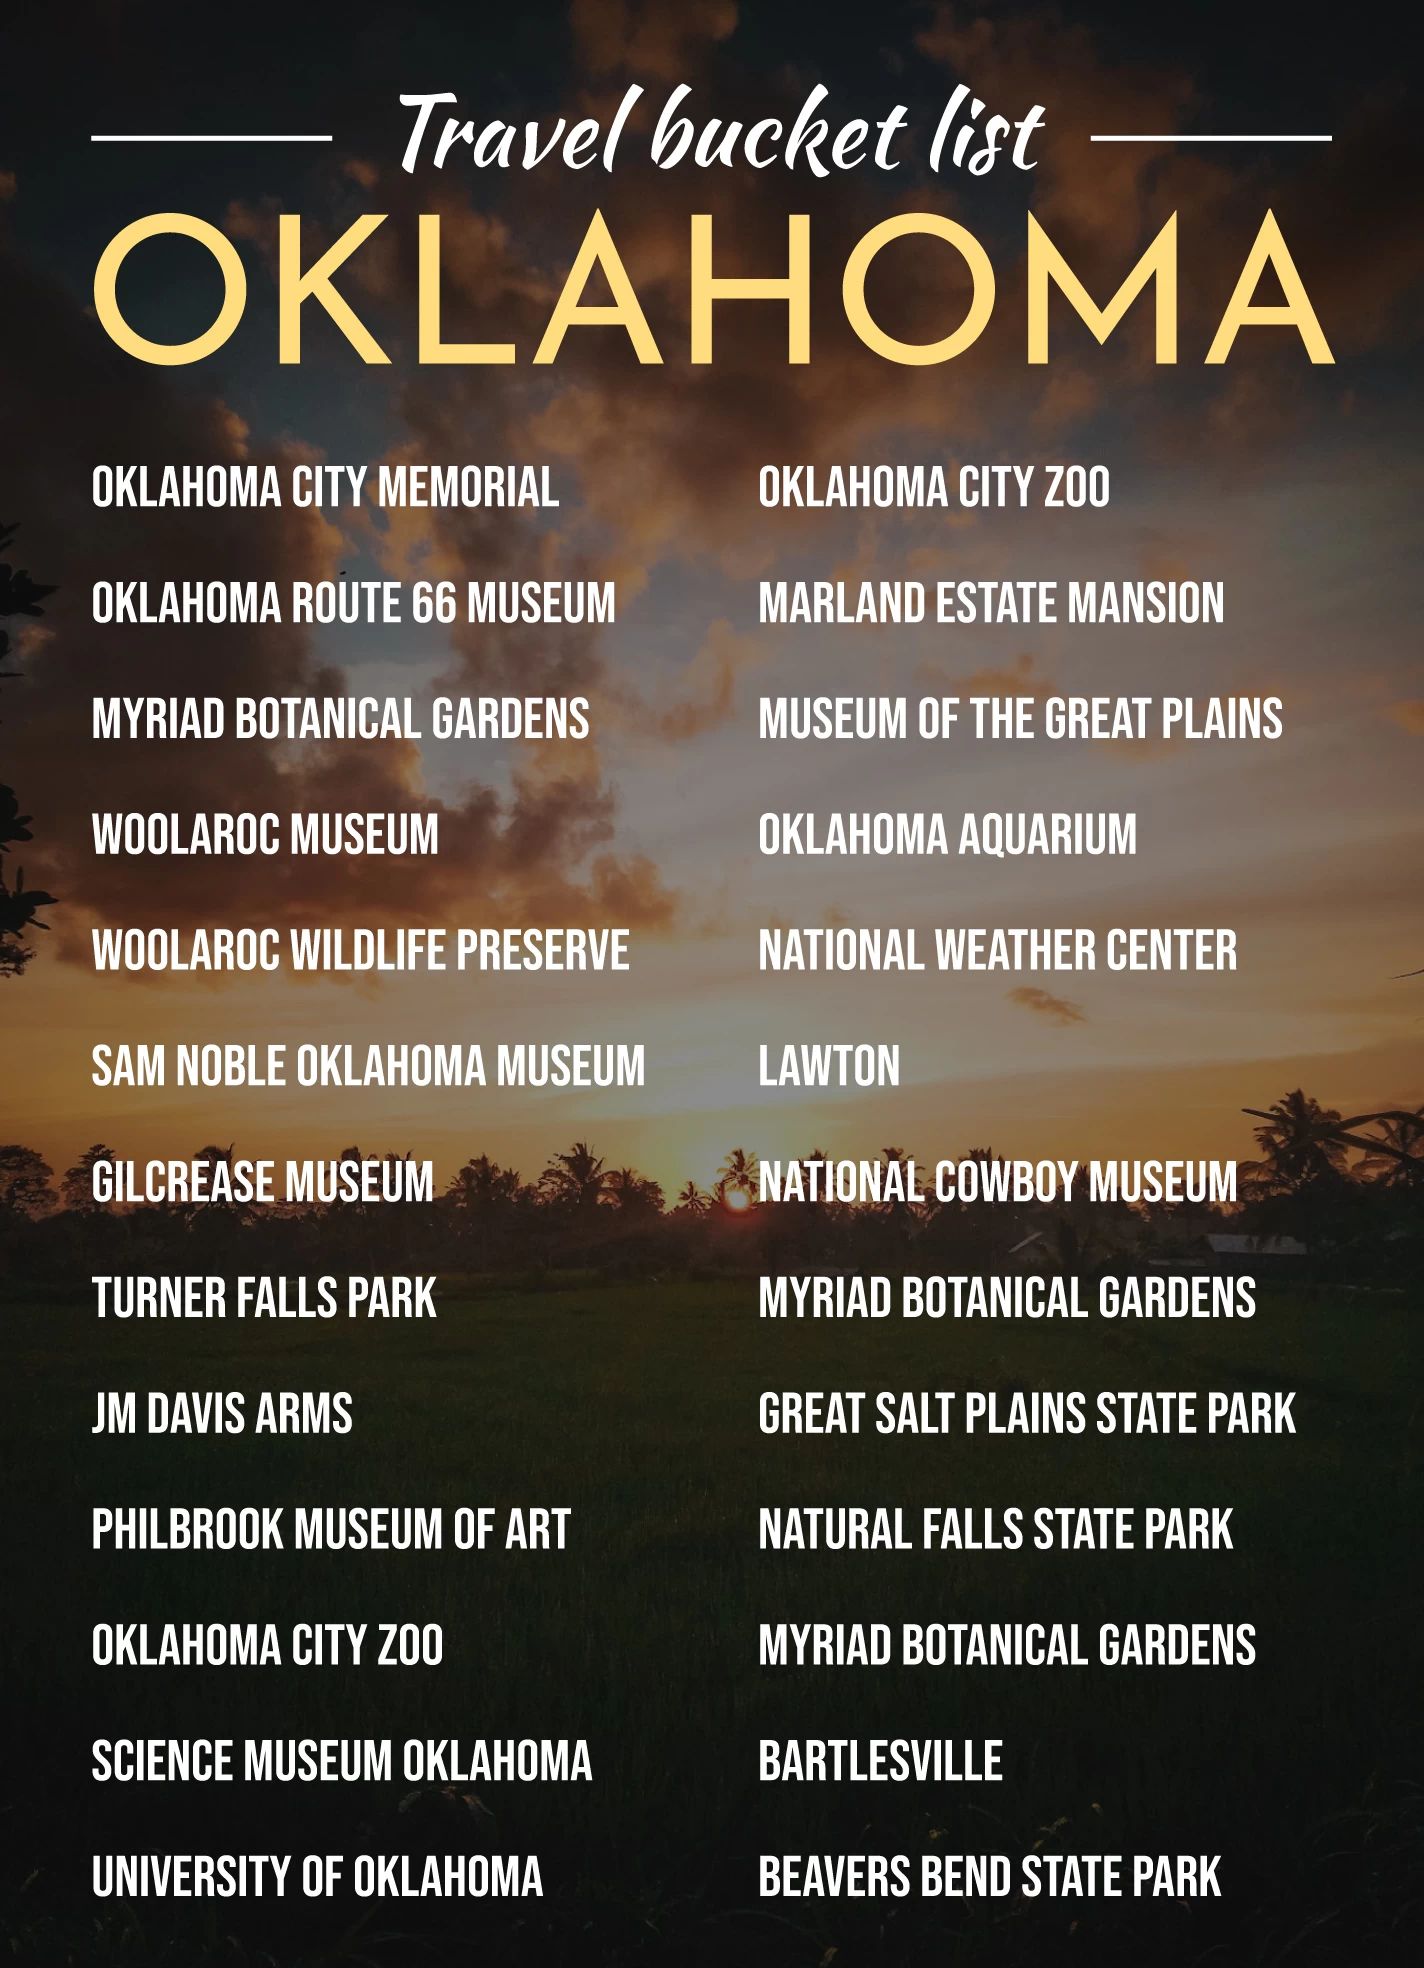 Oklahoma Travel Bucket List Google Slides Template